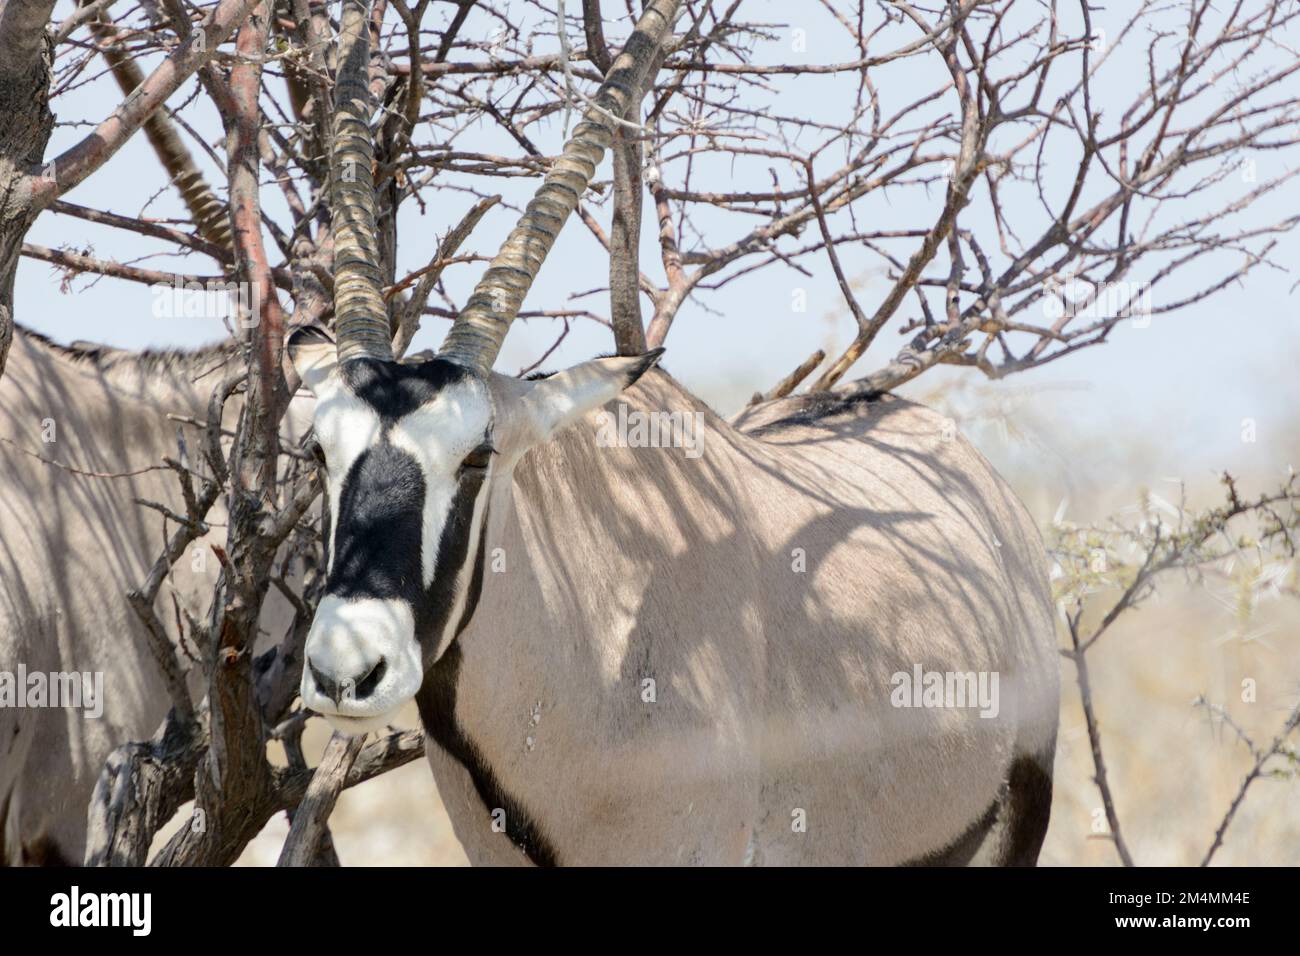 Oryx, gemsbok, gemsbuck ou oryx sud-africain (Oryx gazella), debout à l'ombre d'un arbre dans le parc national d'Etosha, Namibie, Afrique du Sud-Ouest Banque D'Images